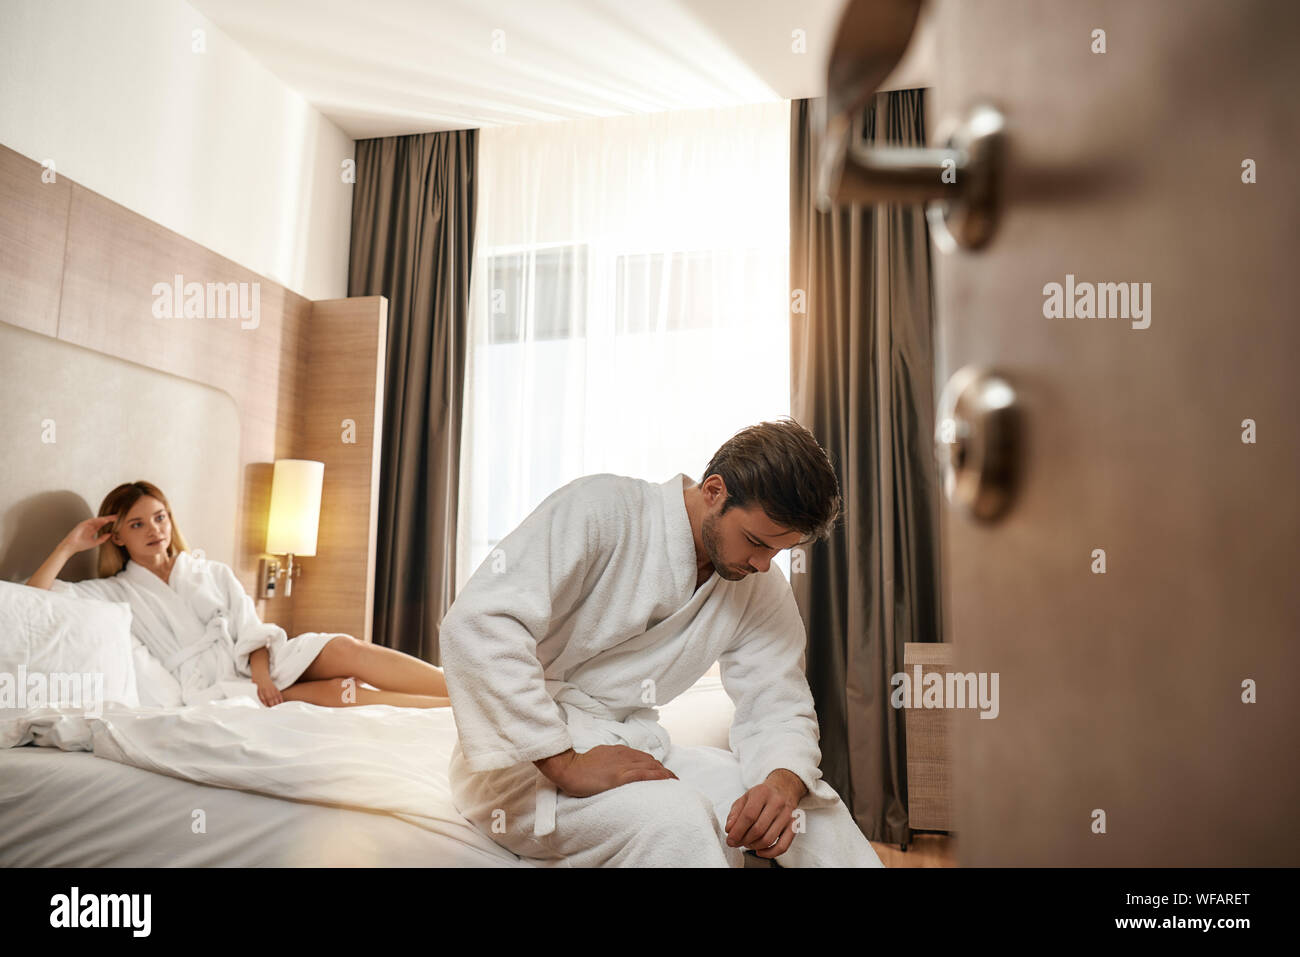 Portrait von Paar tragen weiße Bademäntel. Mann sitzt auf der Kante des Bettes, während Frau an ihm ist. Zusammen reisen Konzept. Horizontale Schuß Stockfoto